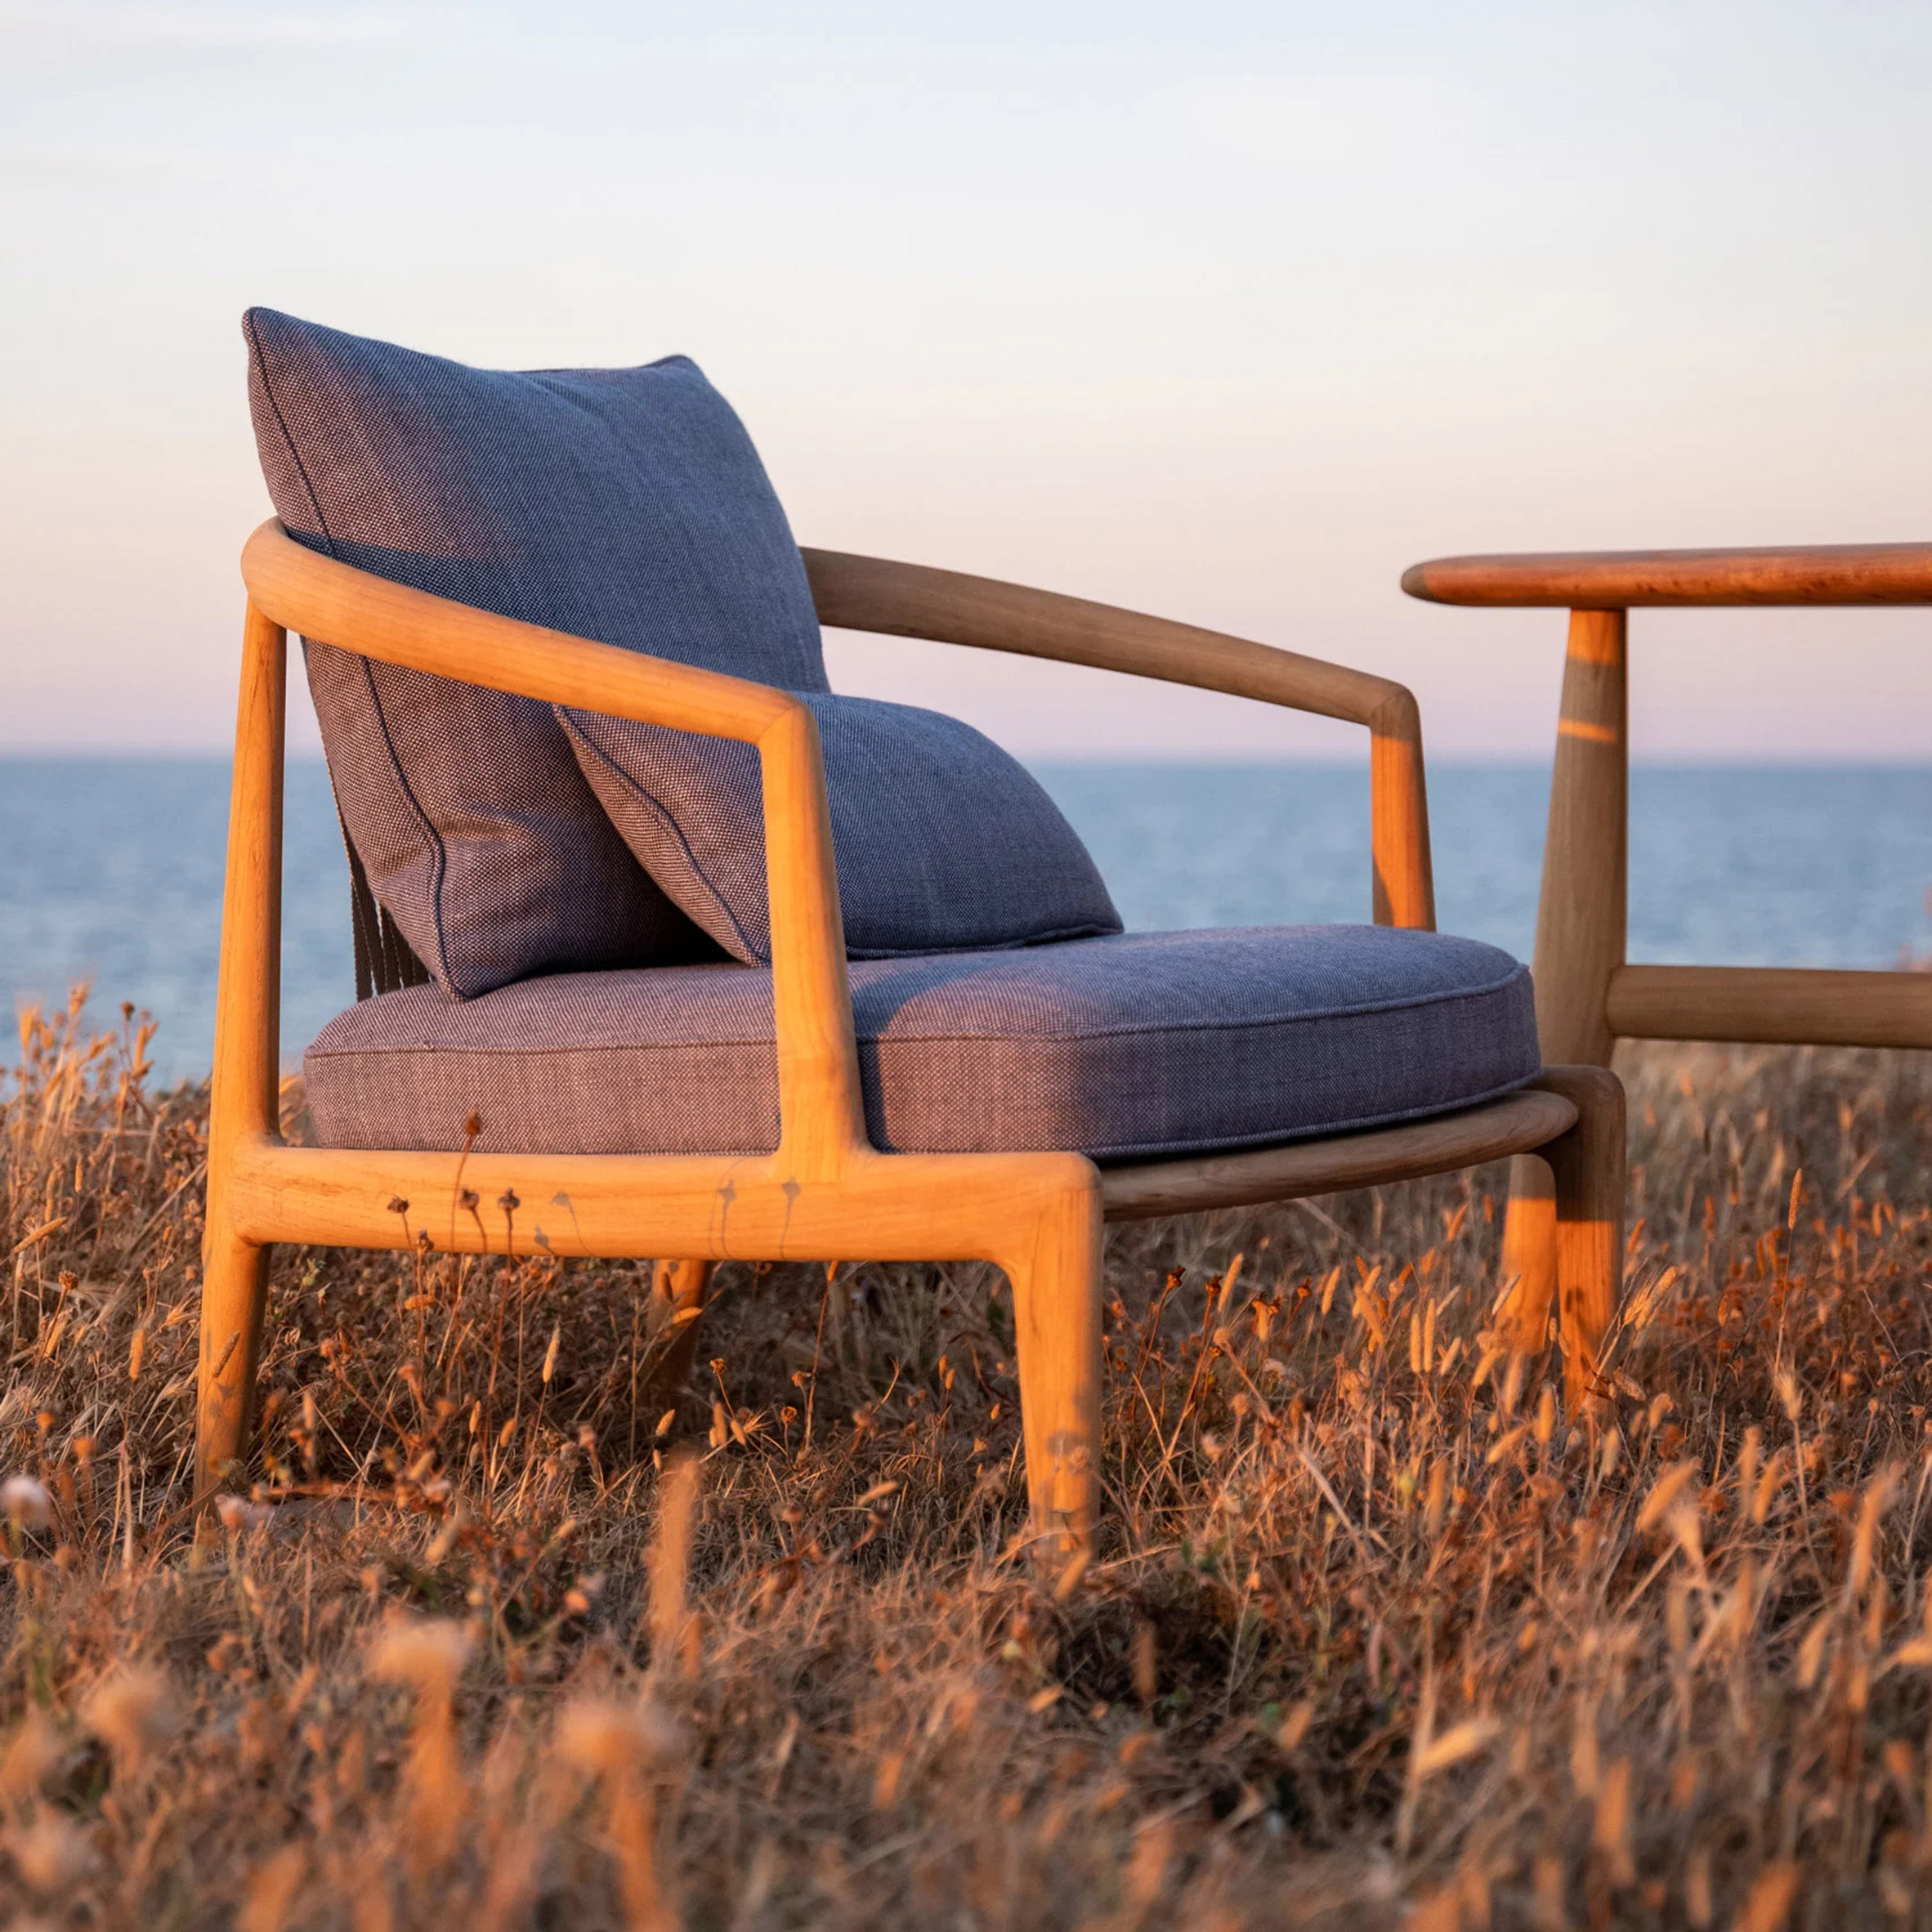 The Poltrona Frau Secret Garden armchair on a grassy patch with a setting sun sky